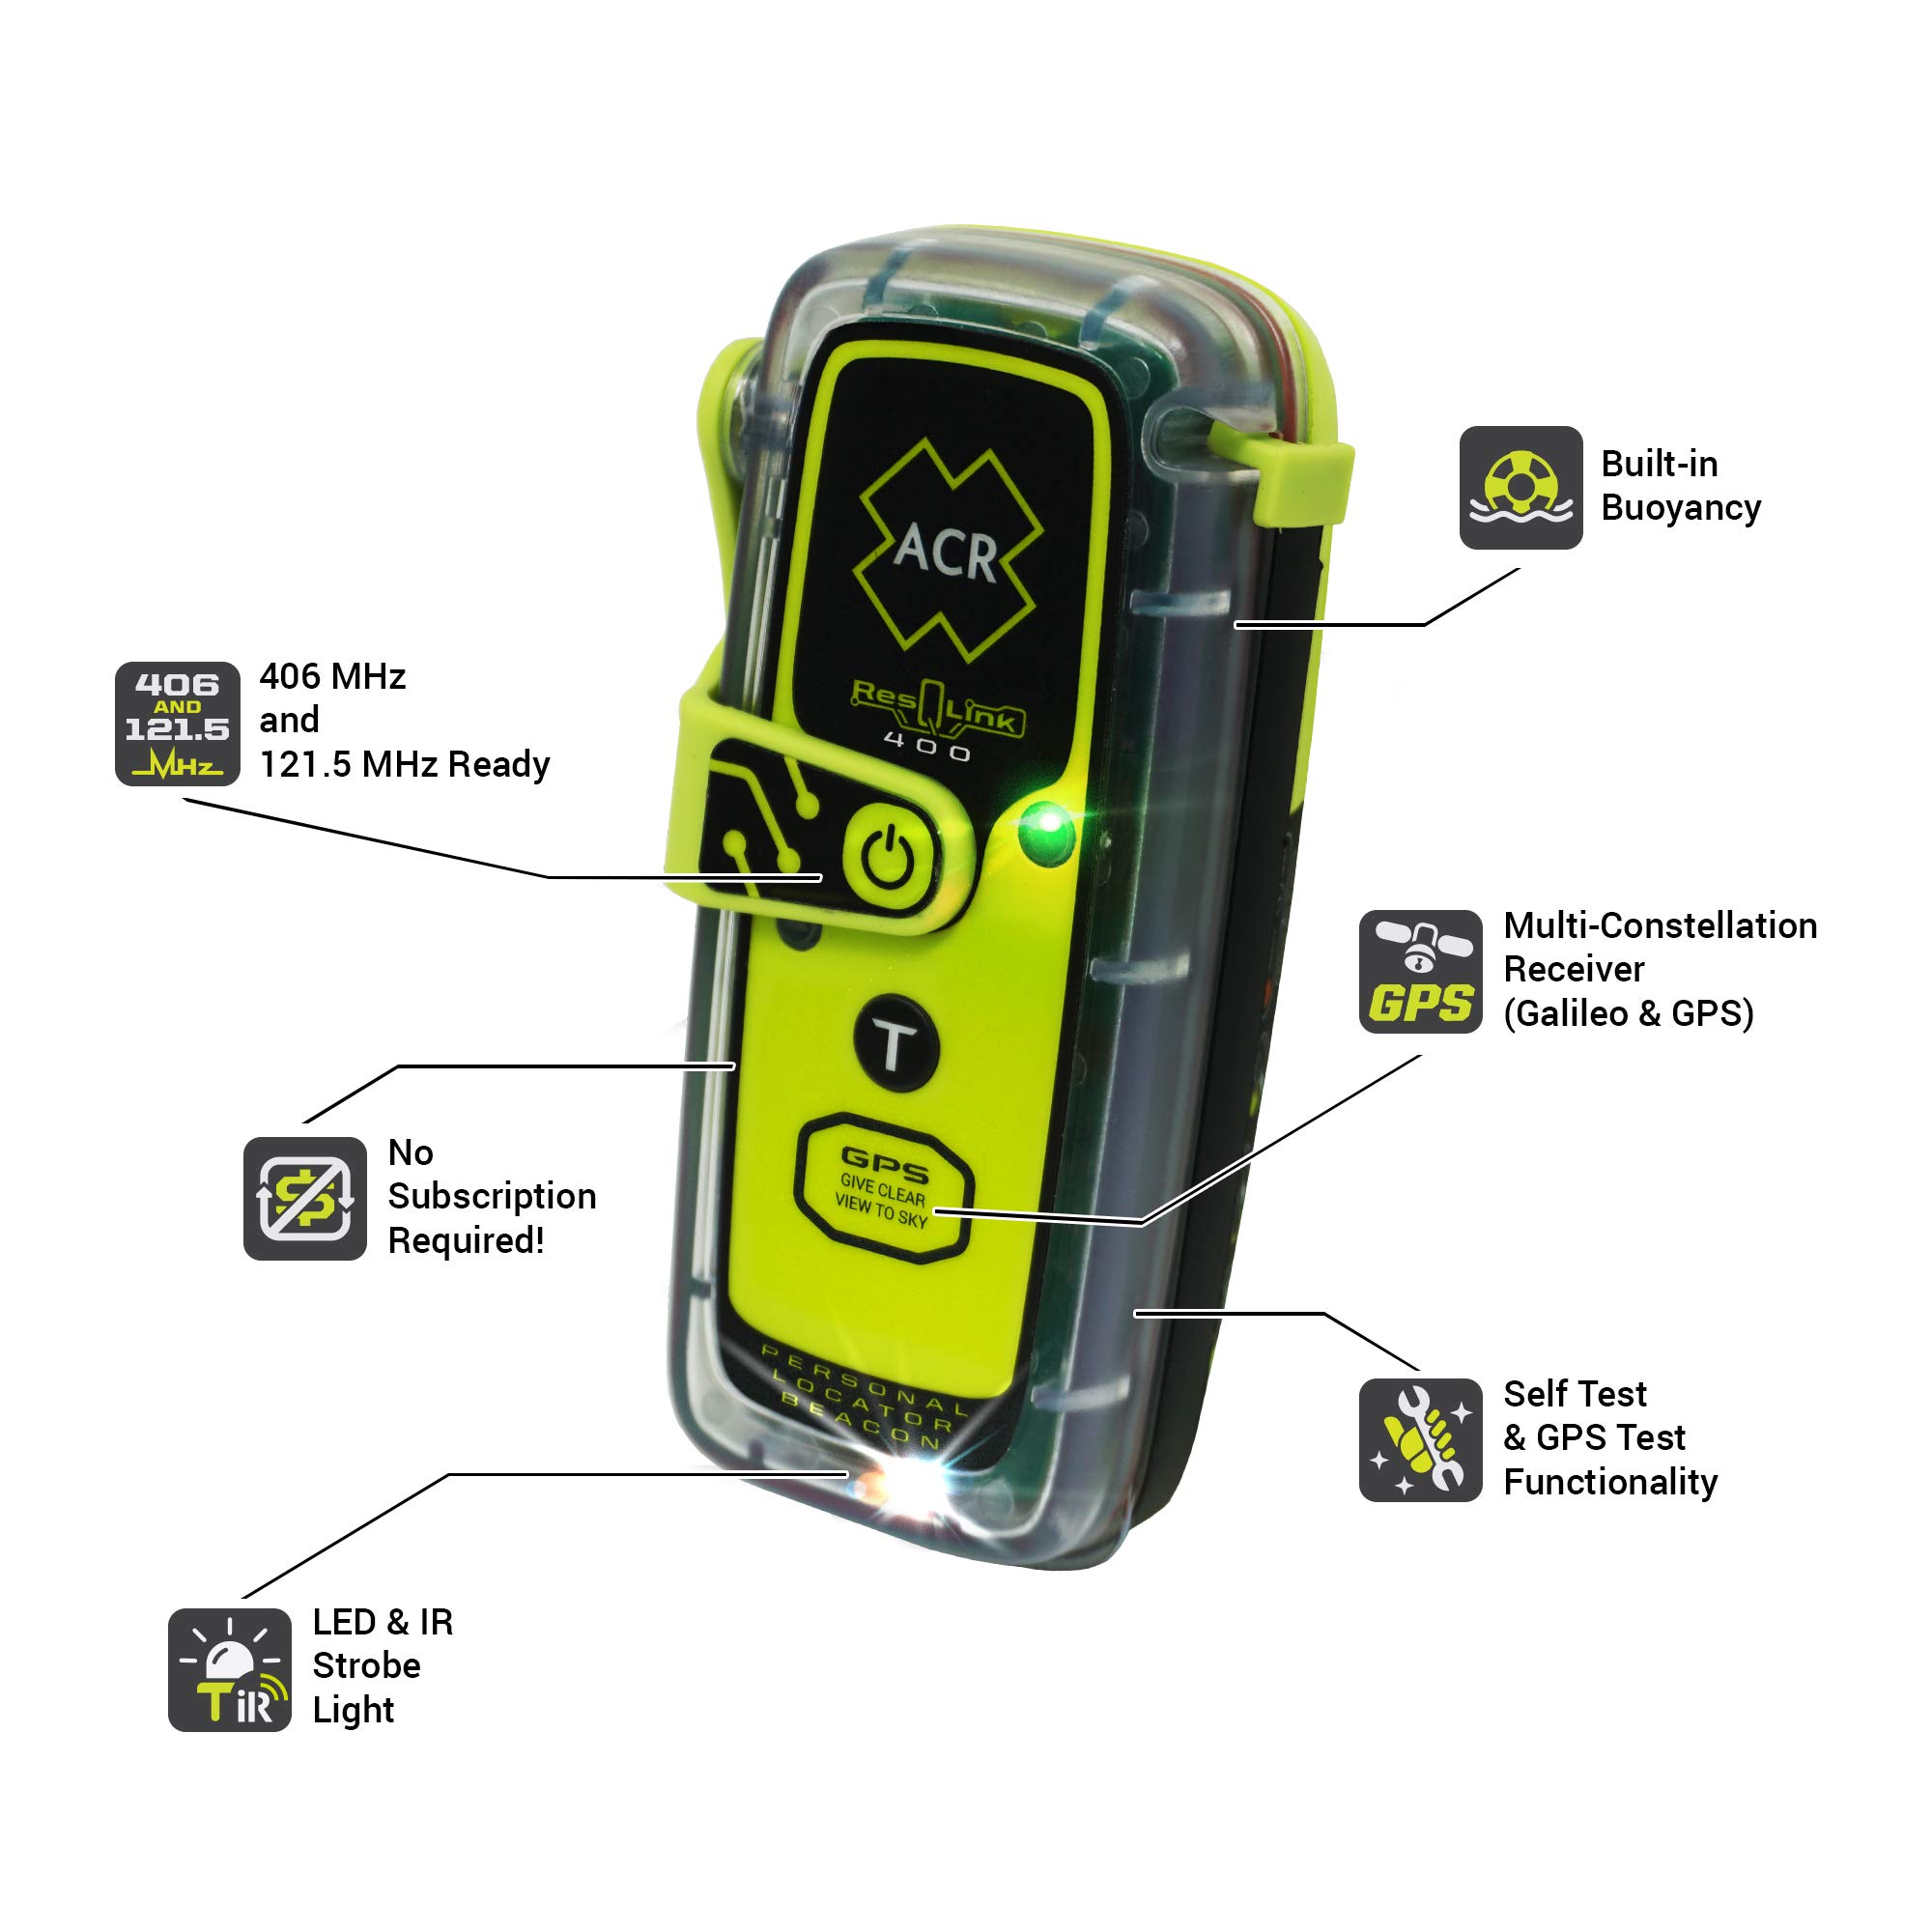 ACR ResQLink 400 - SOS Personal Locator Beacon with GPS (Model: PLB-400) ACR 2921